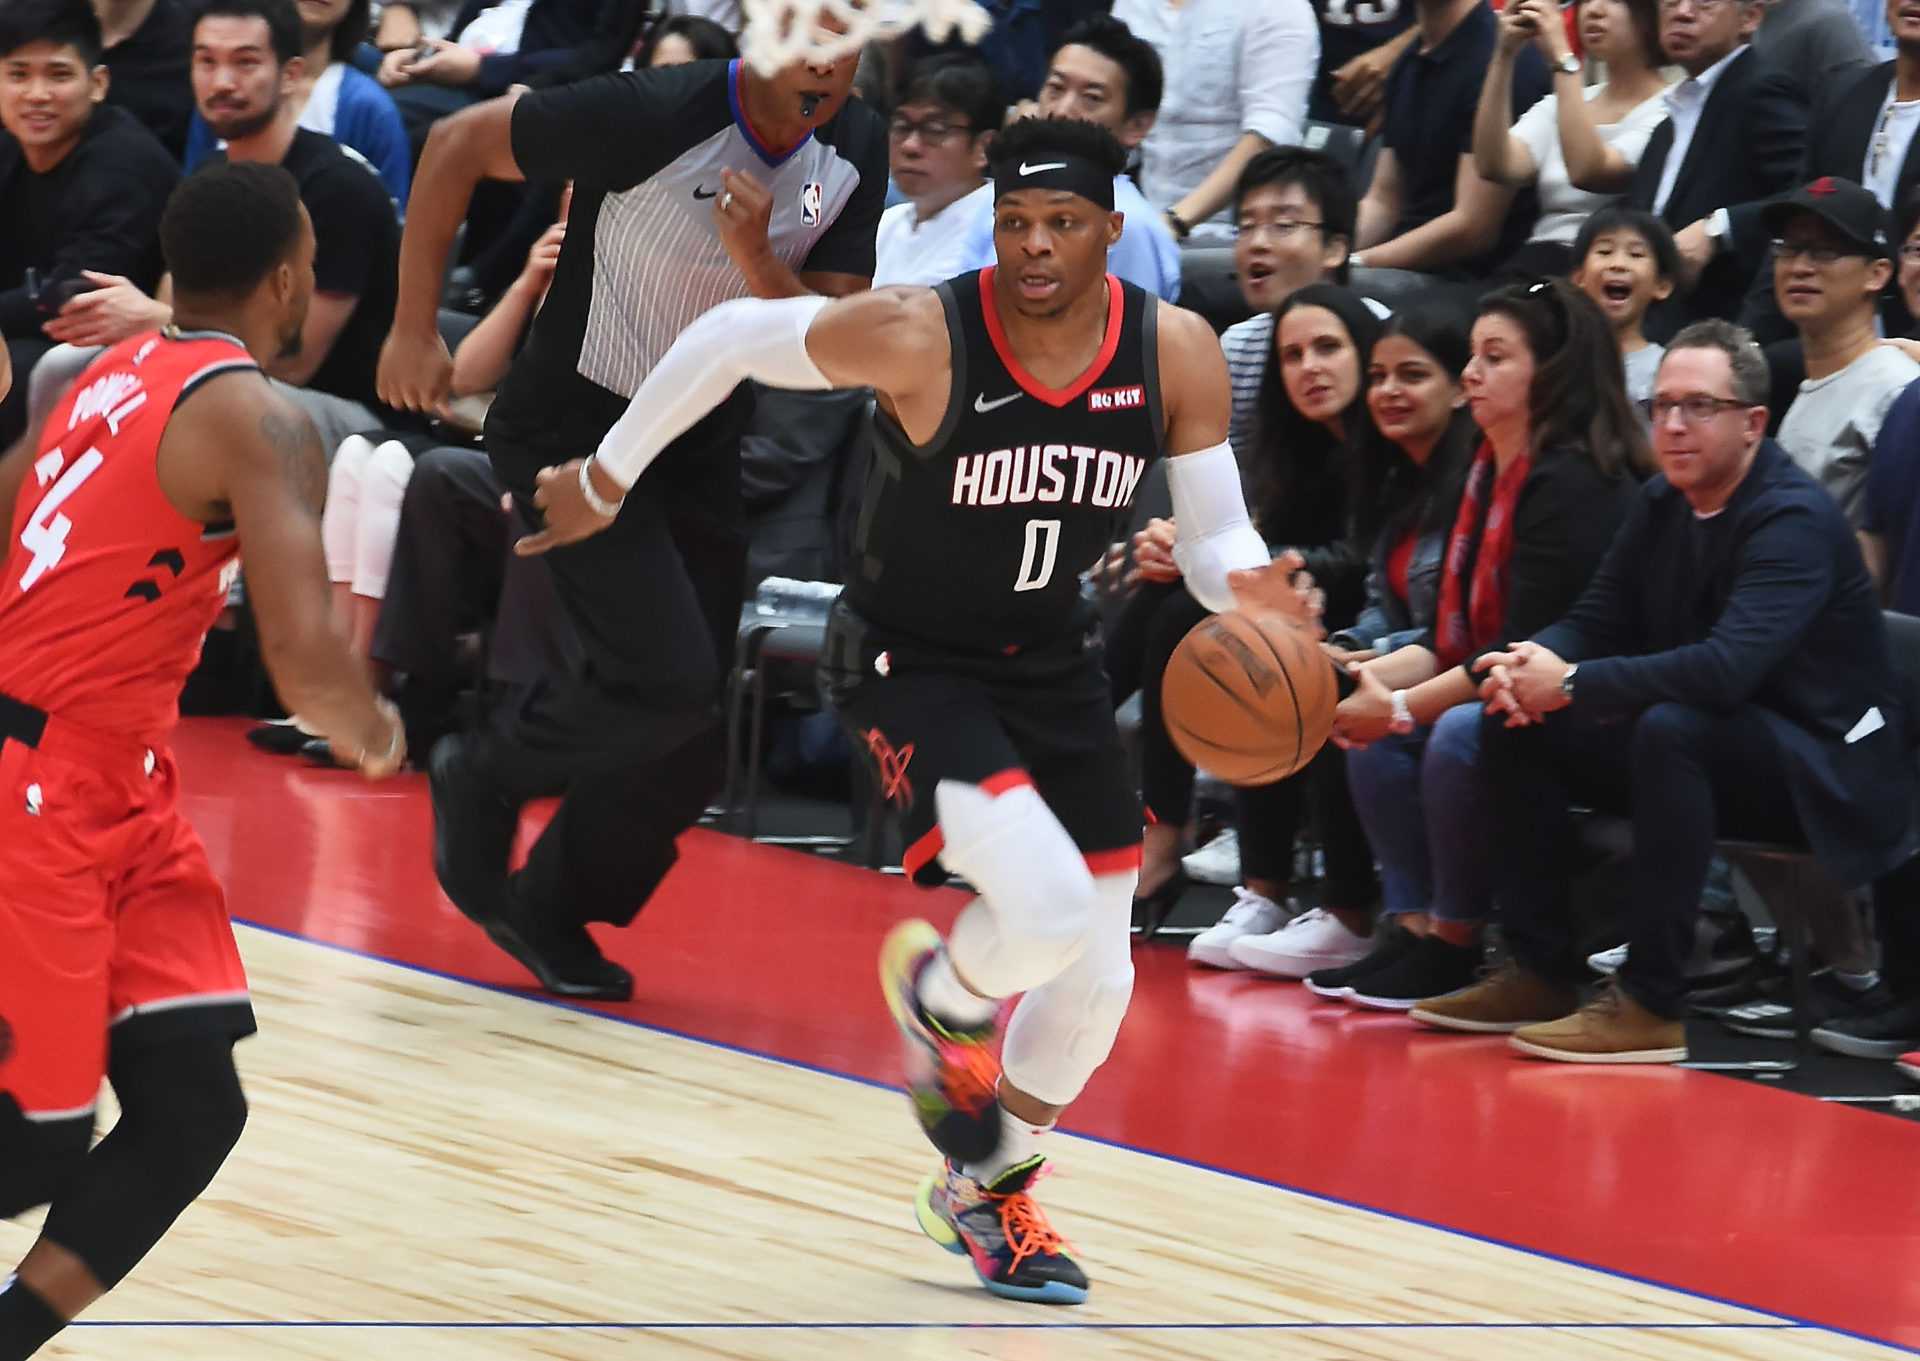 Un ancien joueur de la NBA révèle que Clippers et Knicks ont manifesté leur intérêt pour Russell Westbrook des Rockets